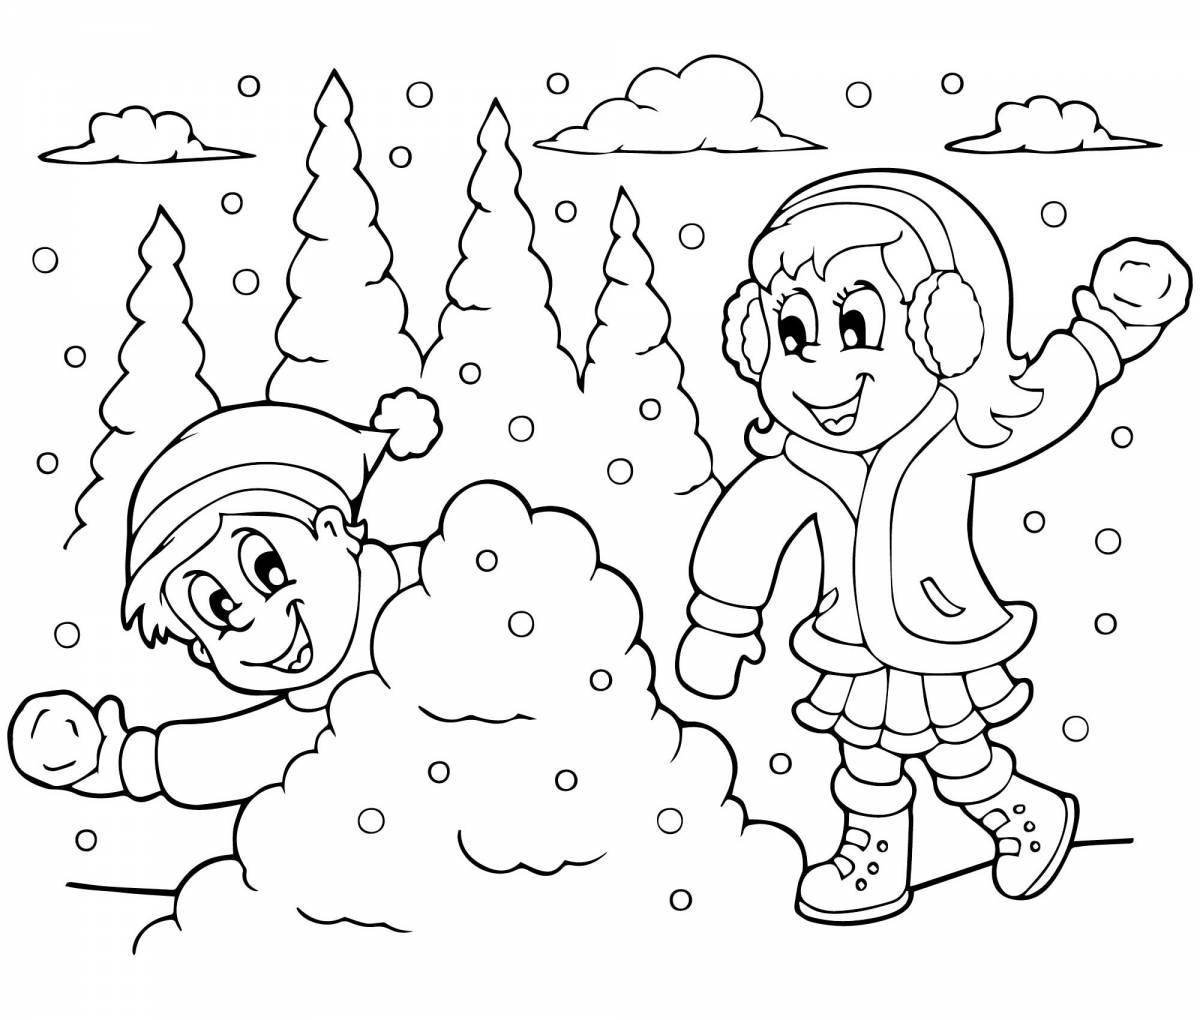 Раскраска стимулированная игра в снежки для детей